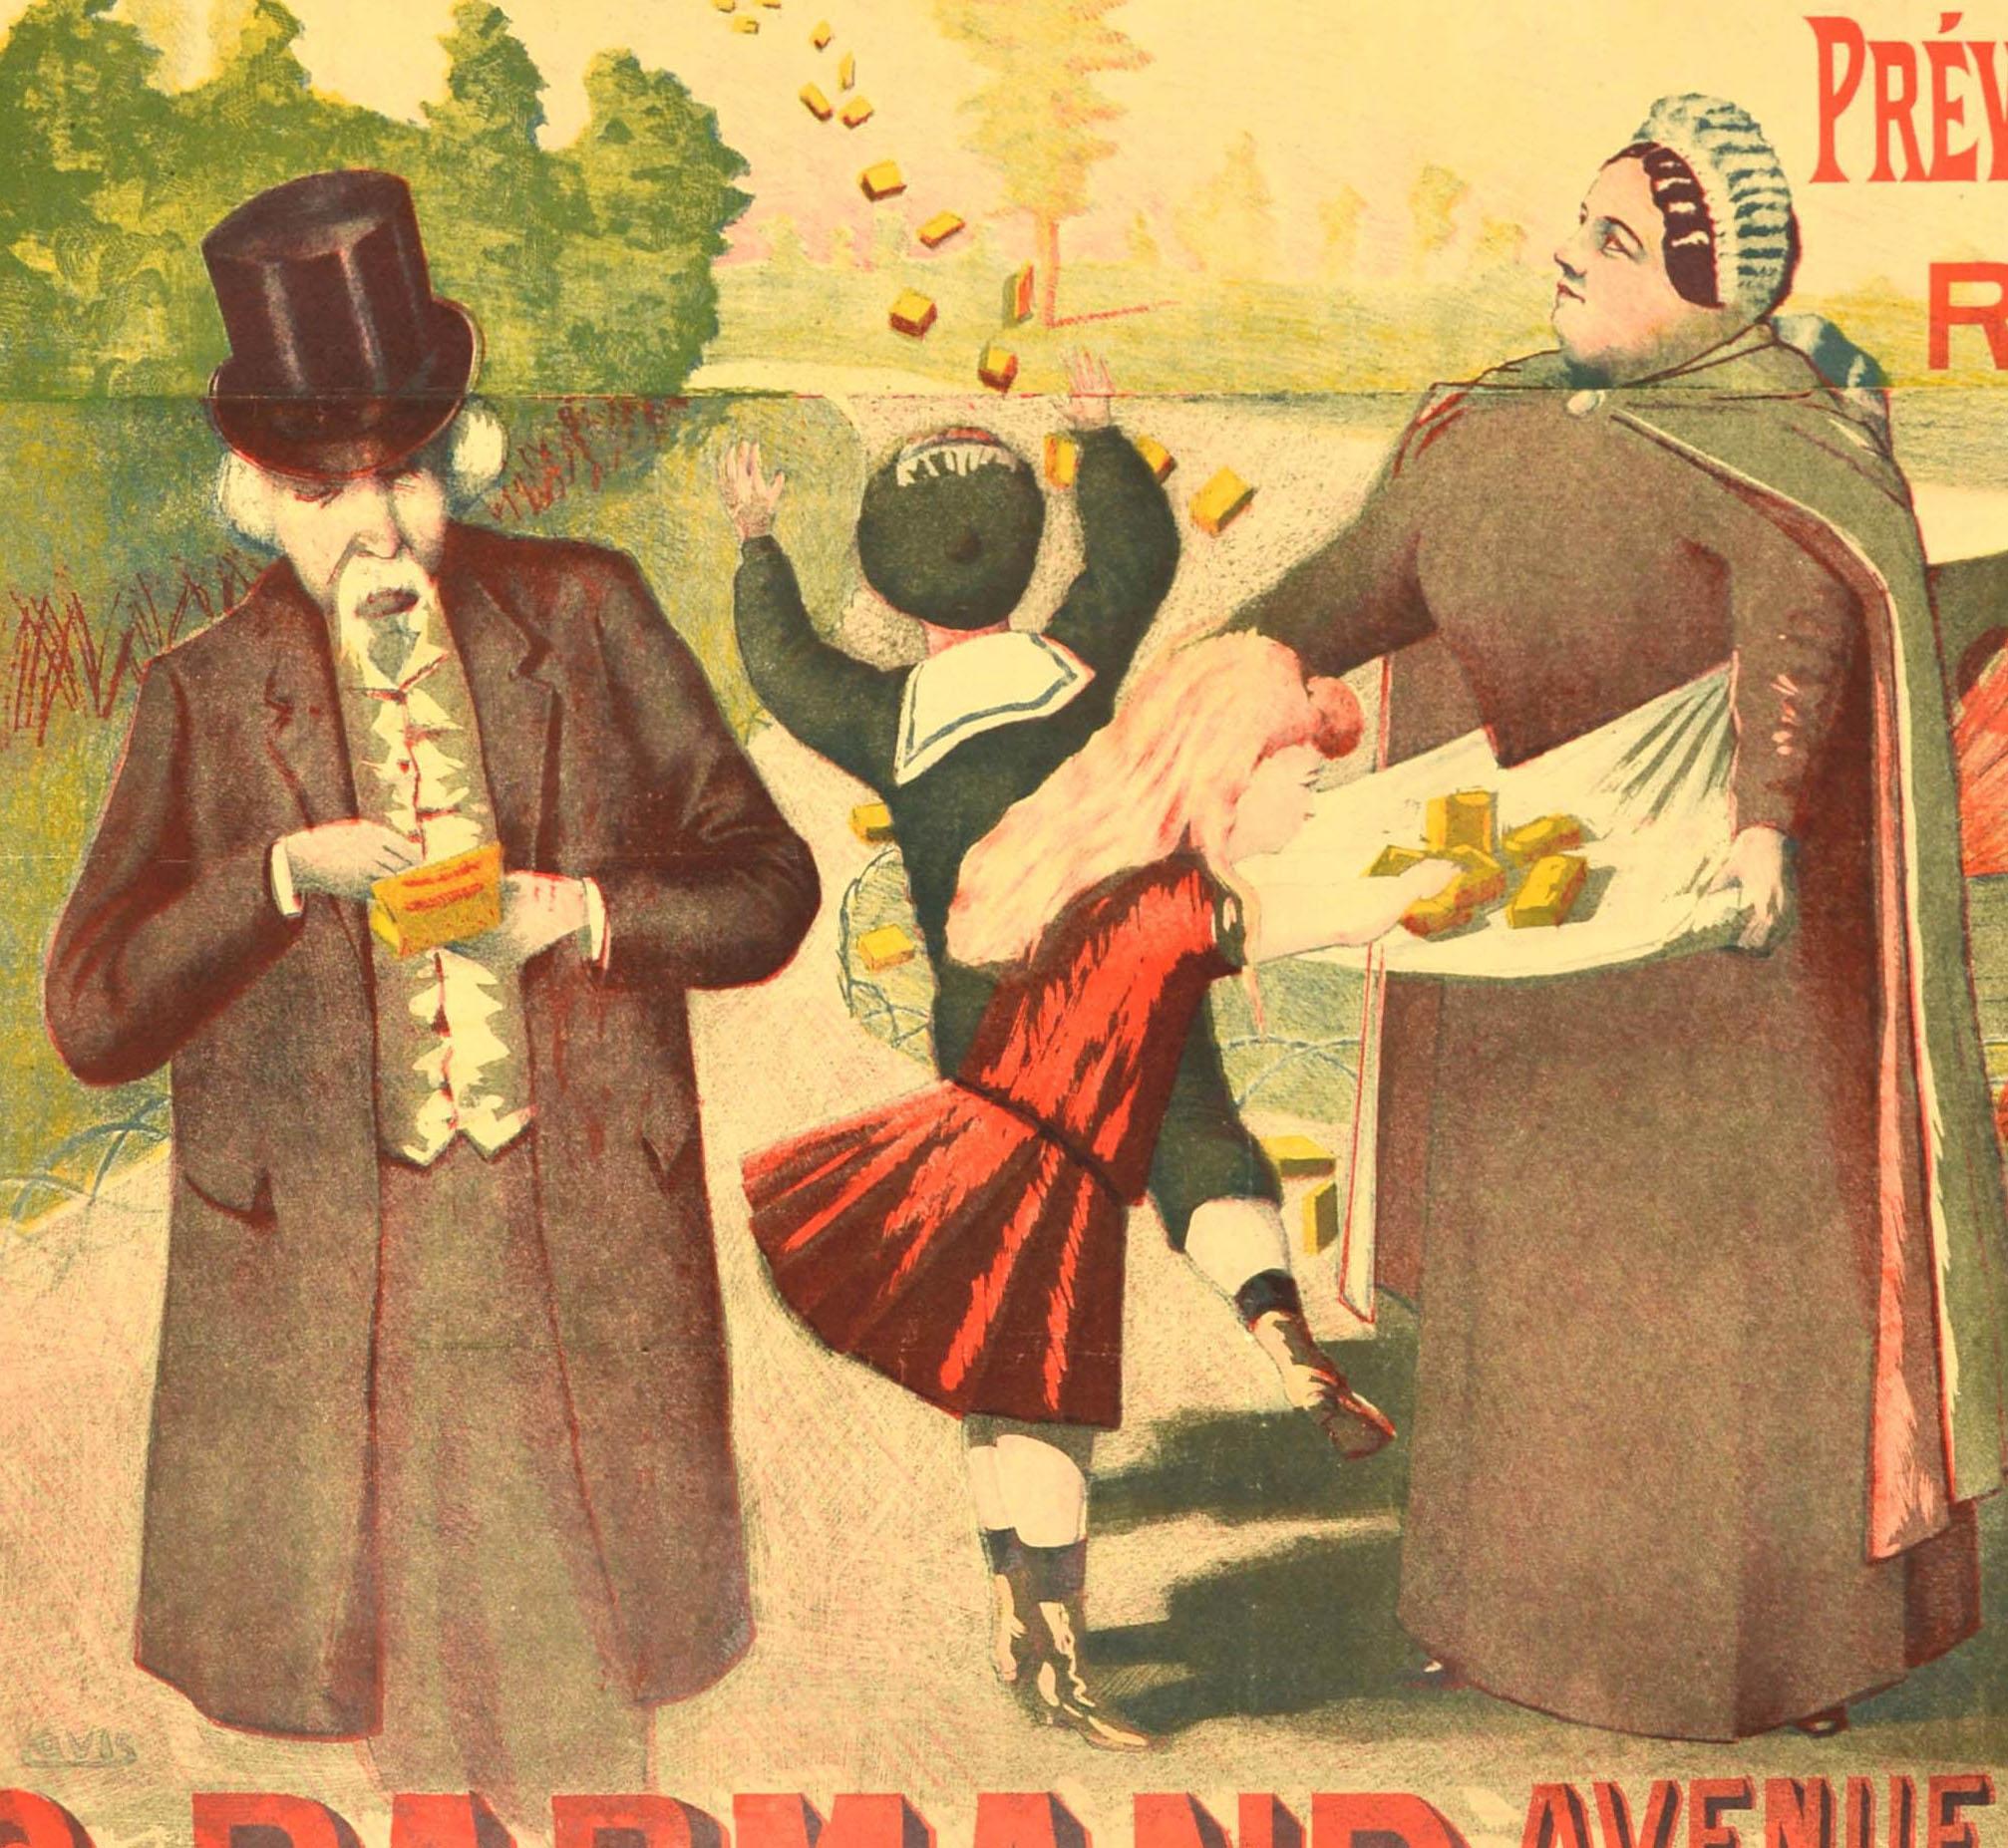 Originales antikes Werbeplakat für Pastilles au Miel mit Honiggeschmack, das eine Illustration der medizinischen Bonbons zeigt, die von einem Luftschiff auf einen Park fallen, in dem Kinder sie auffangen und auf die Schürze einer Dame legen, hinter